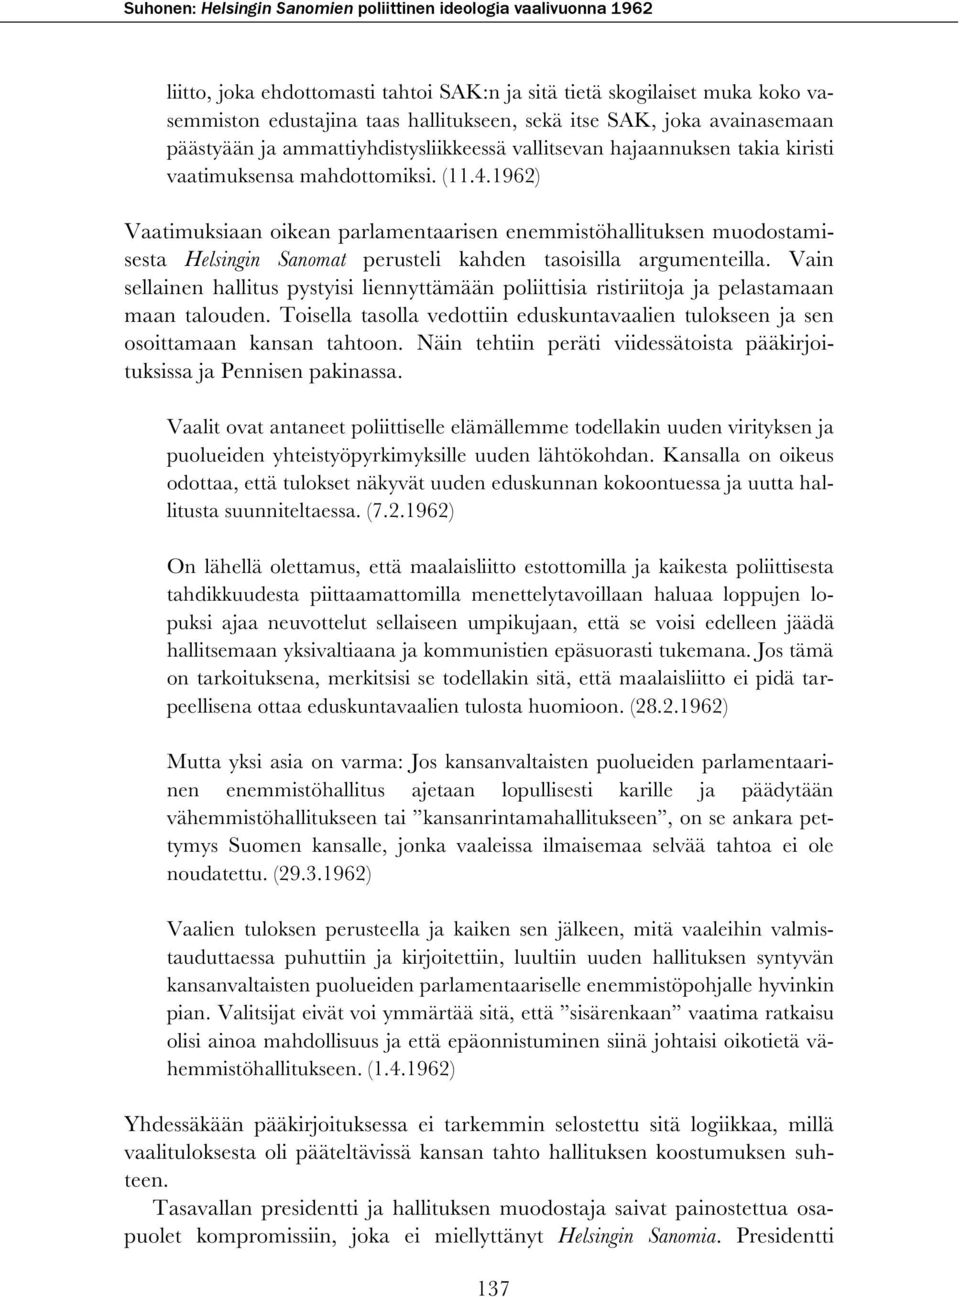 1962) Vaatimuksiaan oikean parlamentaarisen enemmistöhallituksen muodostamisesta Helsingin Sanomat perusteli kahden tasoisilla argumenteilla.